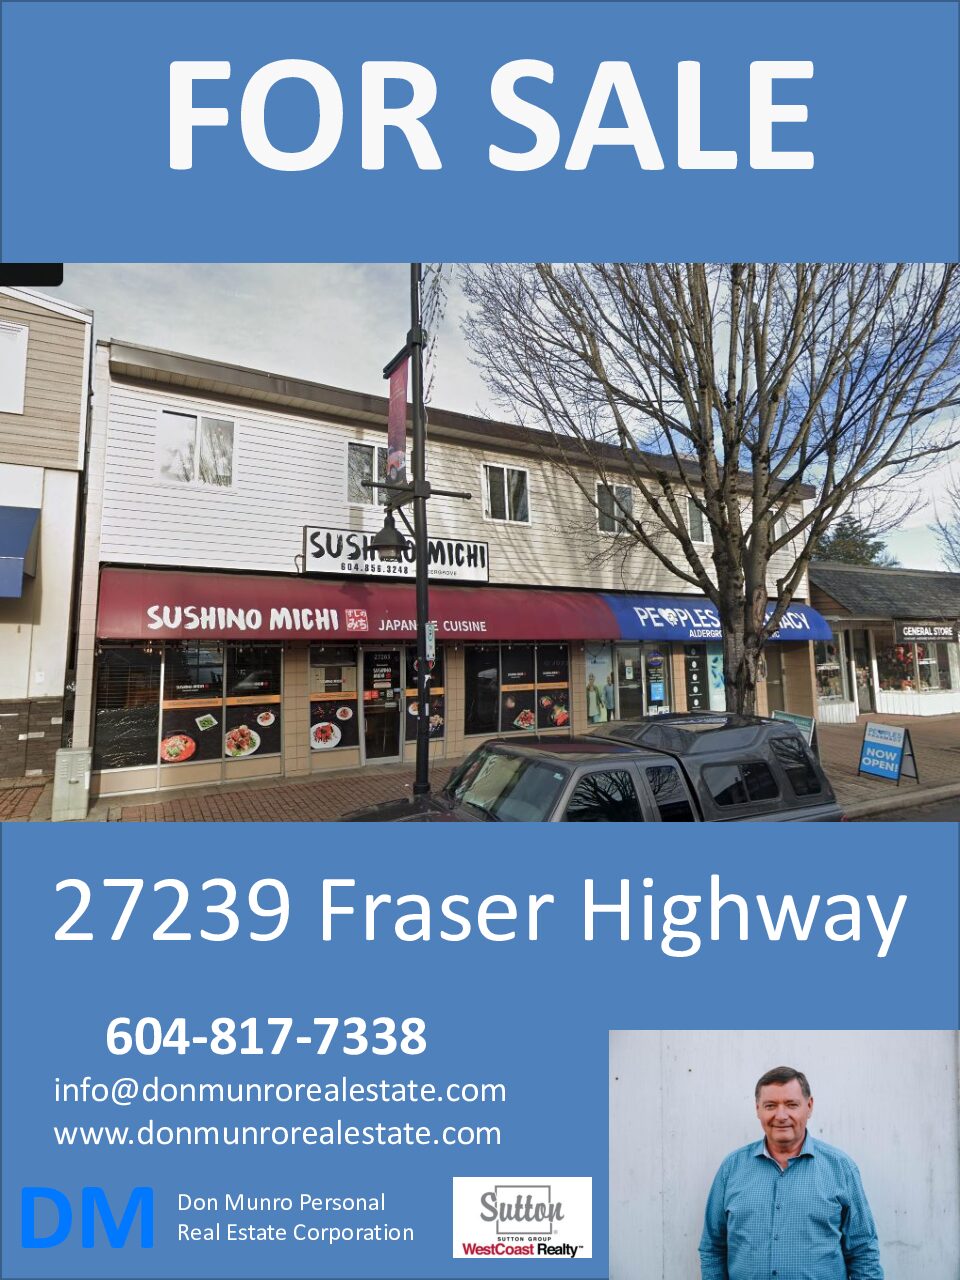 27263 Fraser Highway Sales Package